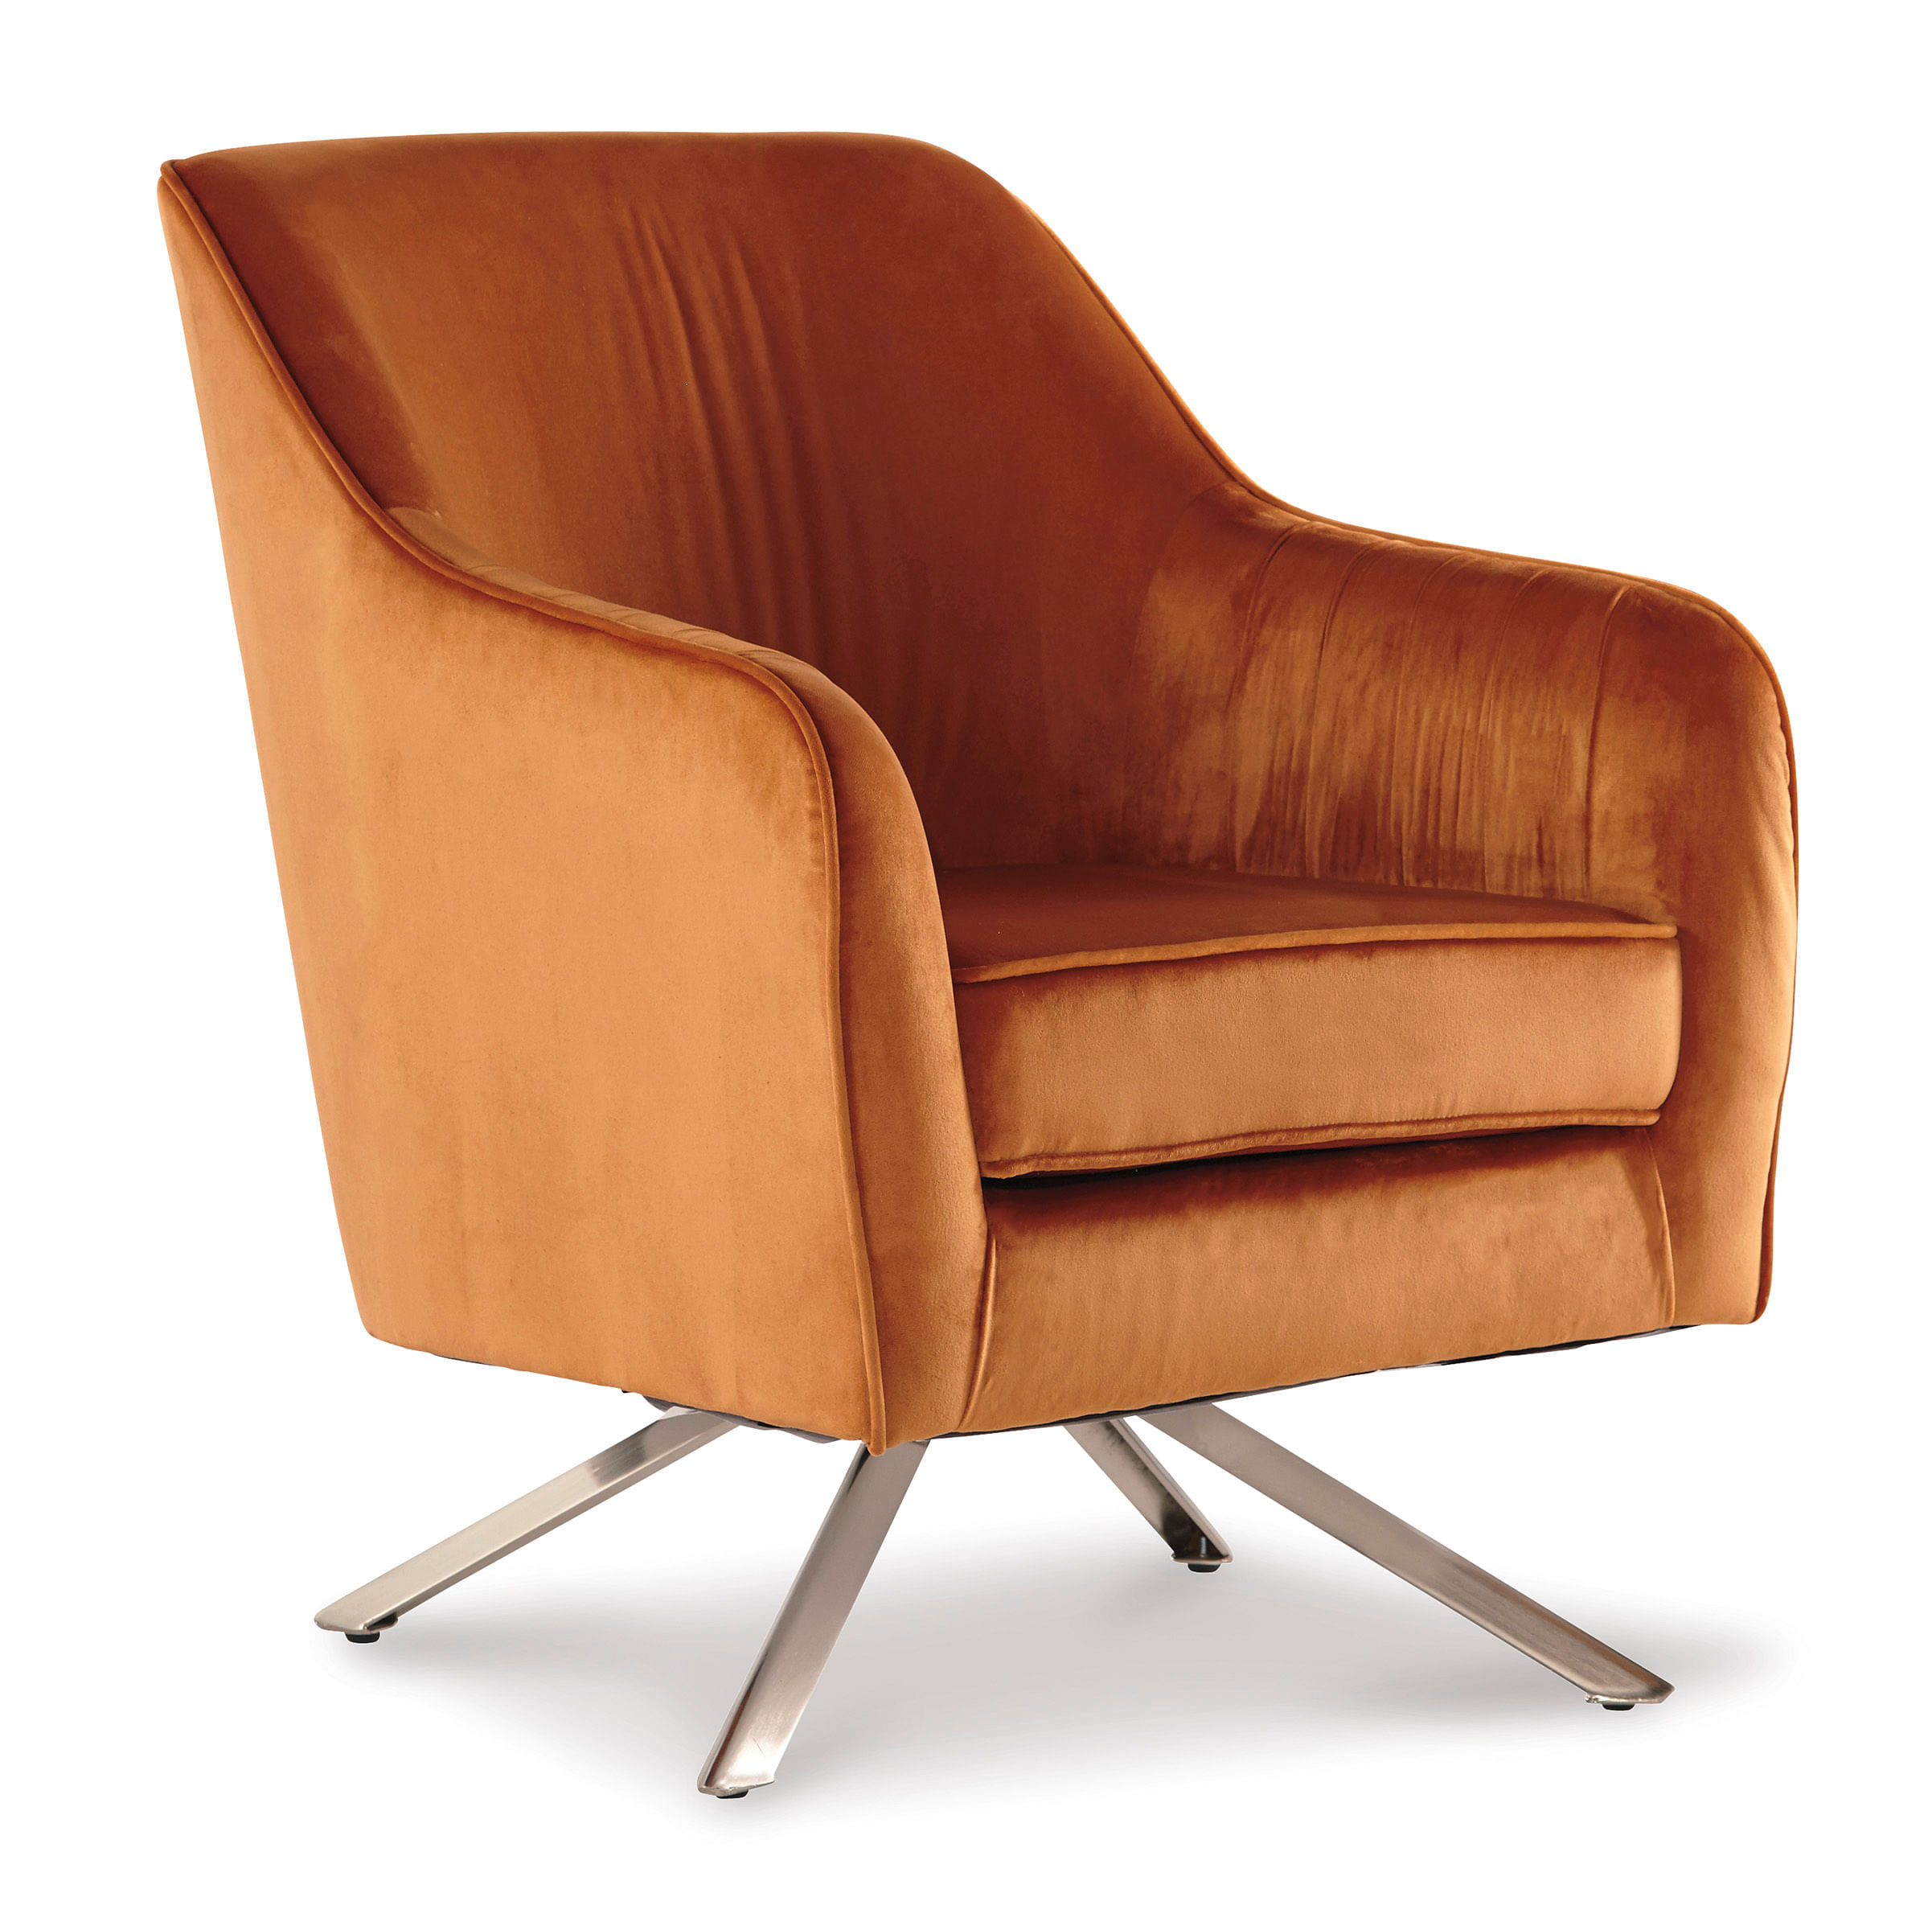 Ashley Furniture - Hangar Accent Chair